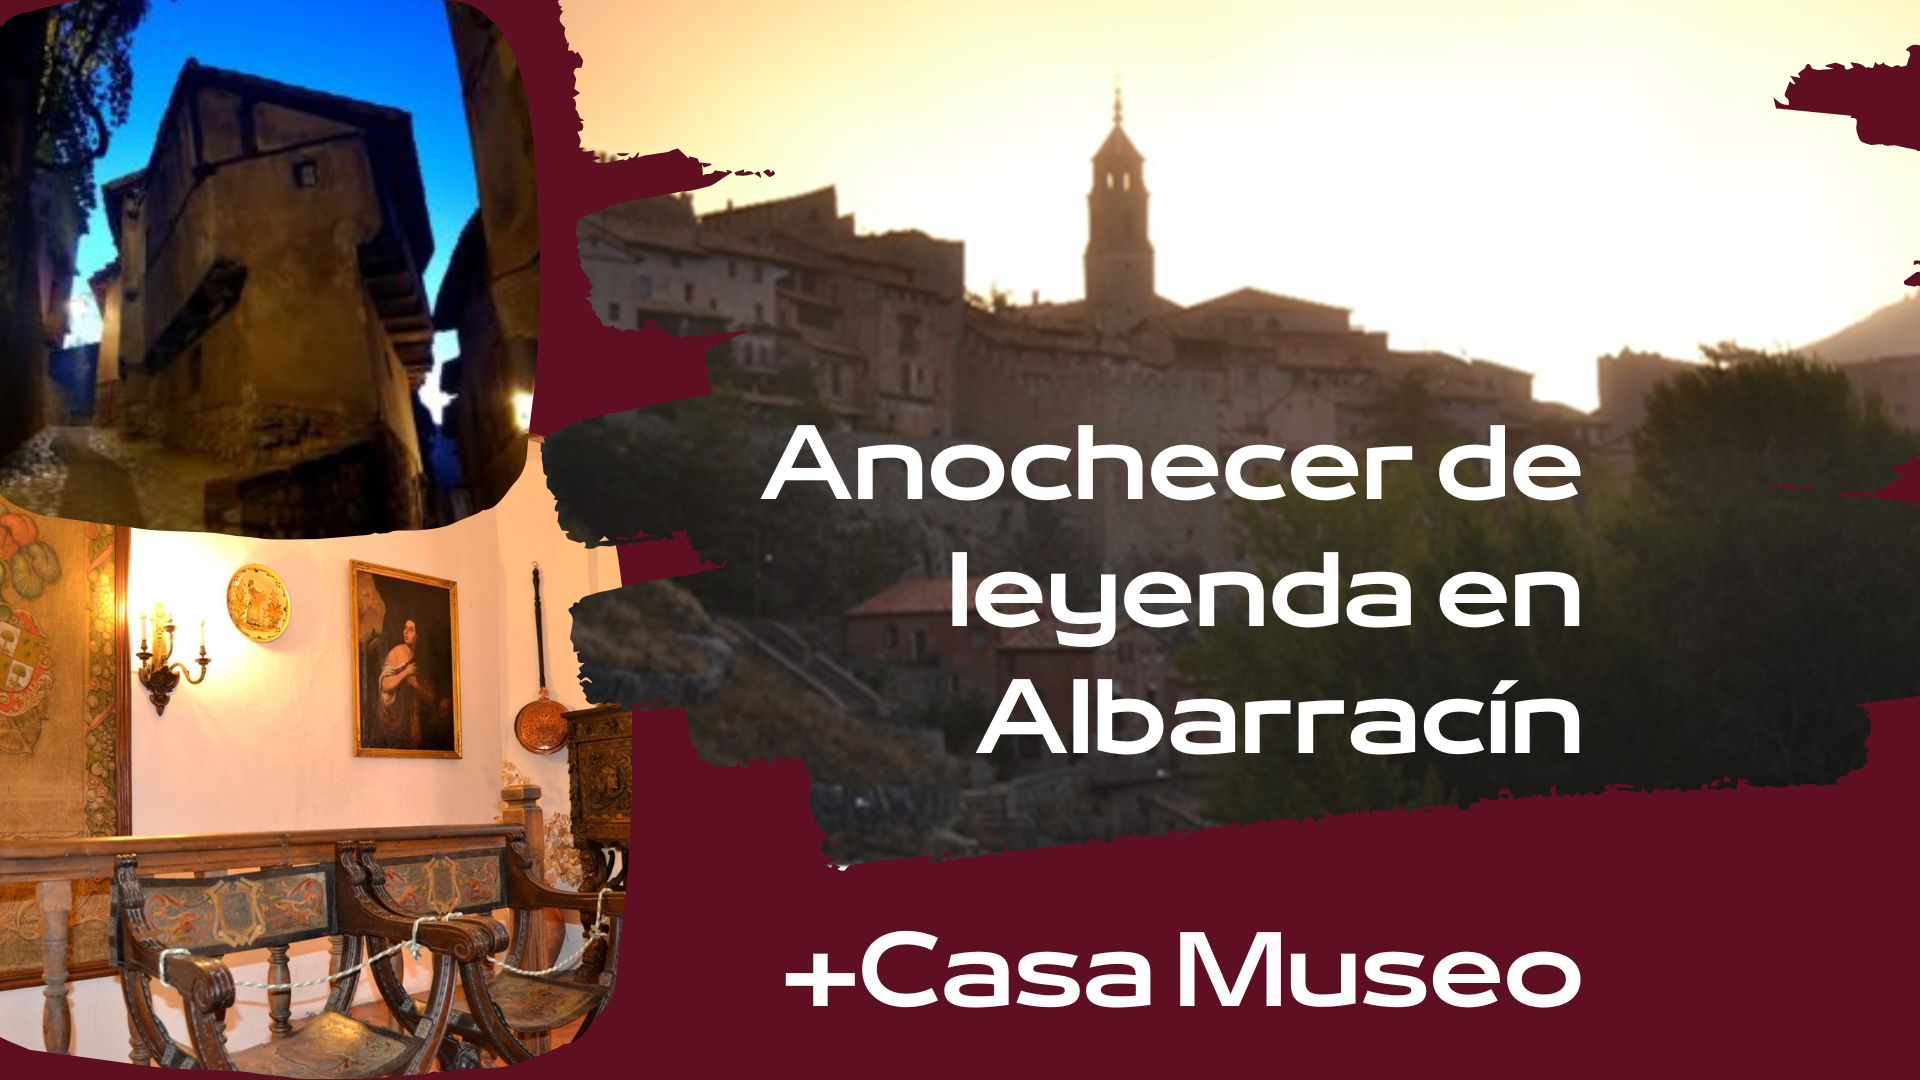 De Lunes 26 al Viernes 30…Anochecer de Leyenda en Albarracín + Casona Museo. Te esperamos!